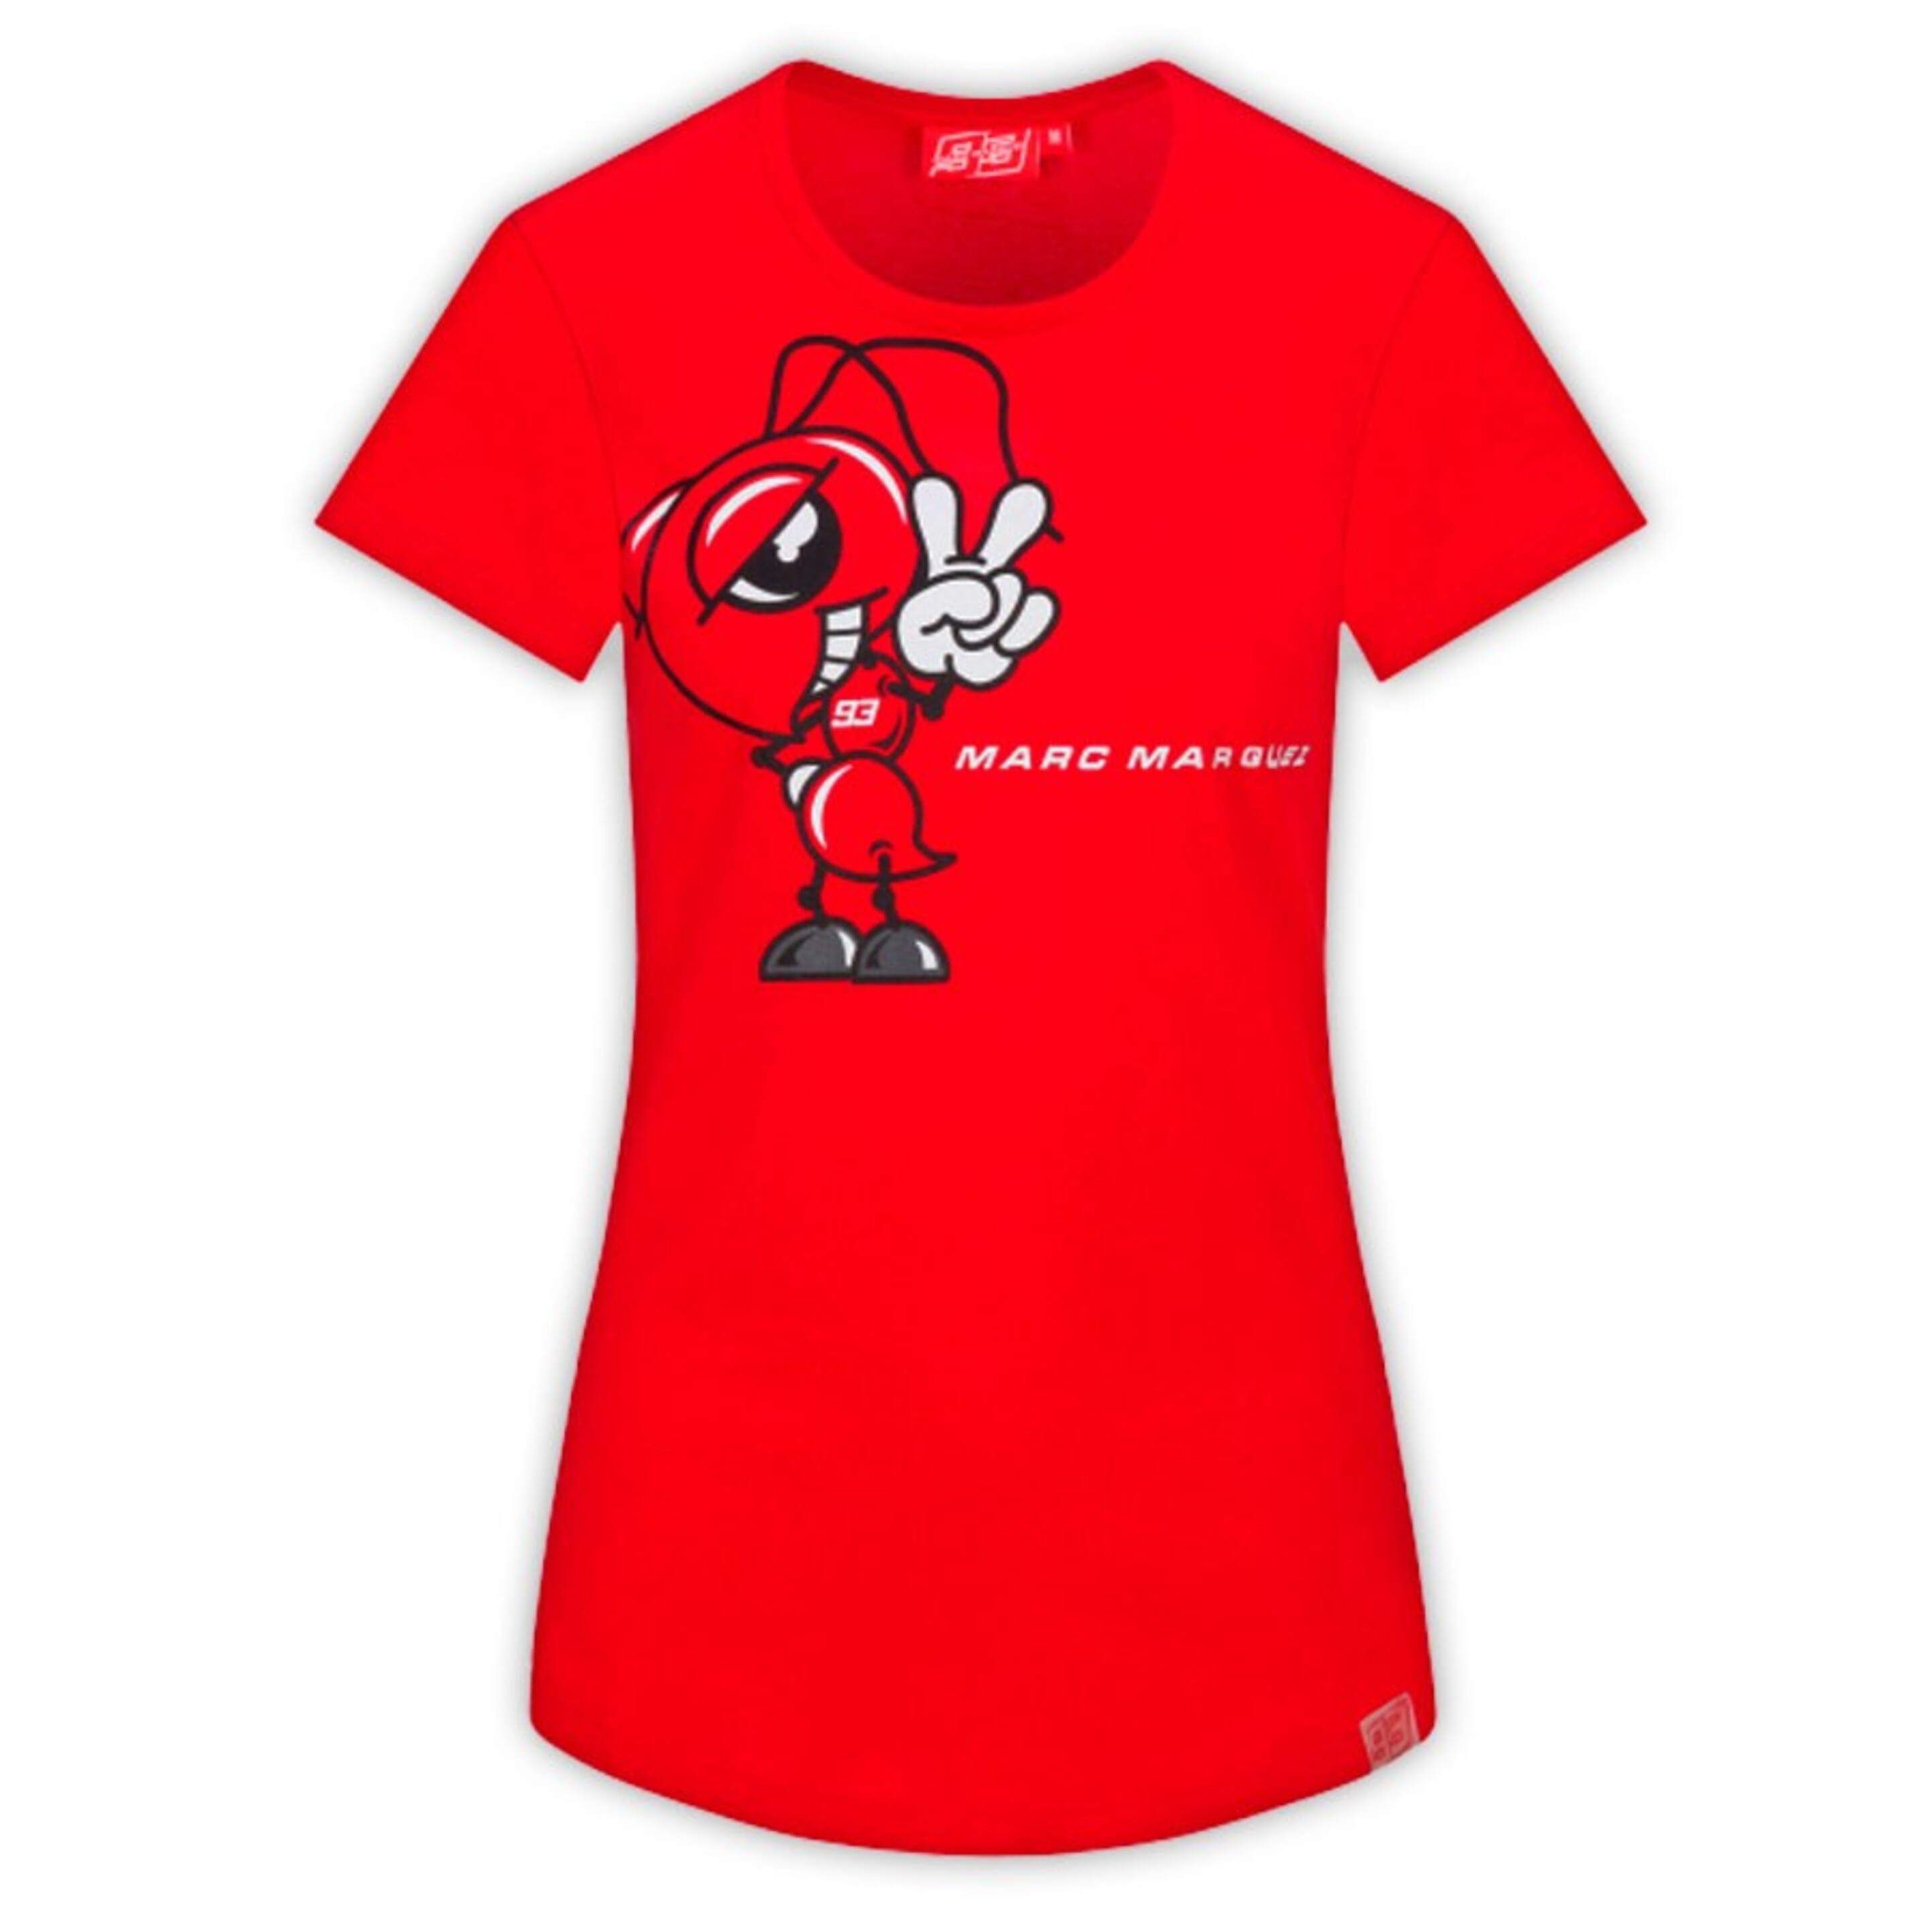 Camiseta Mujer Marc Márquez 93 Hormiga - rojo - 